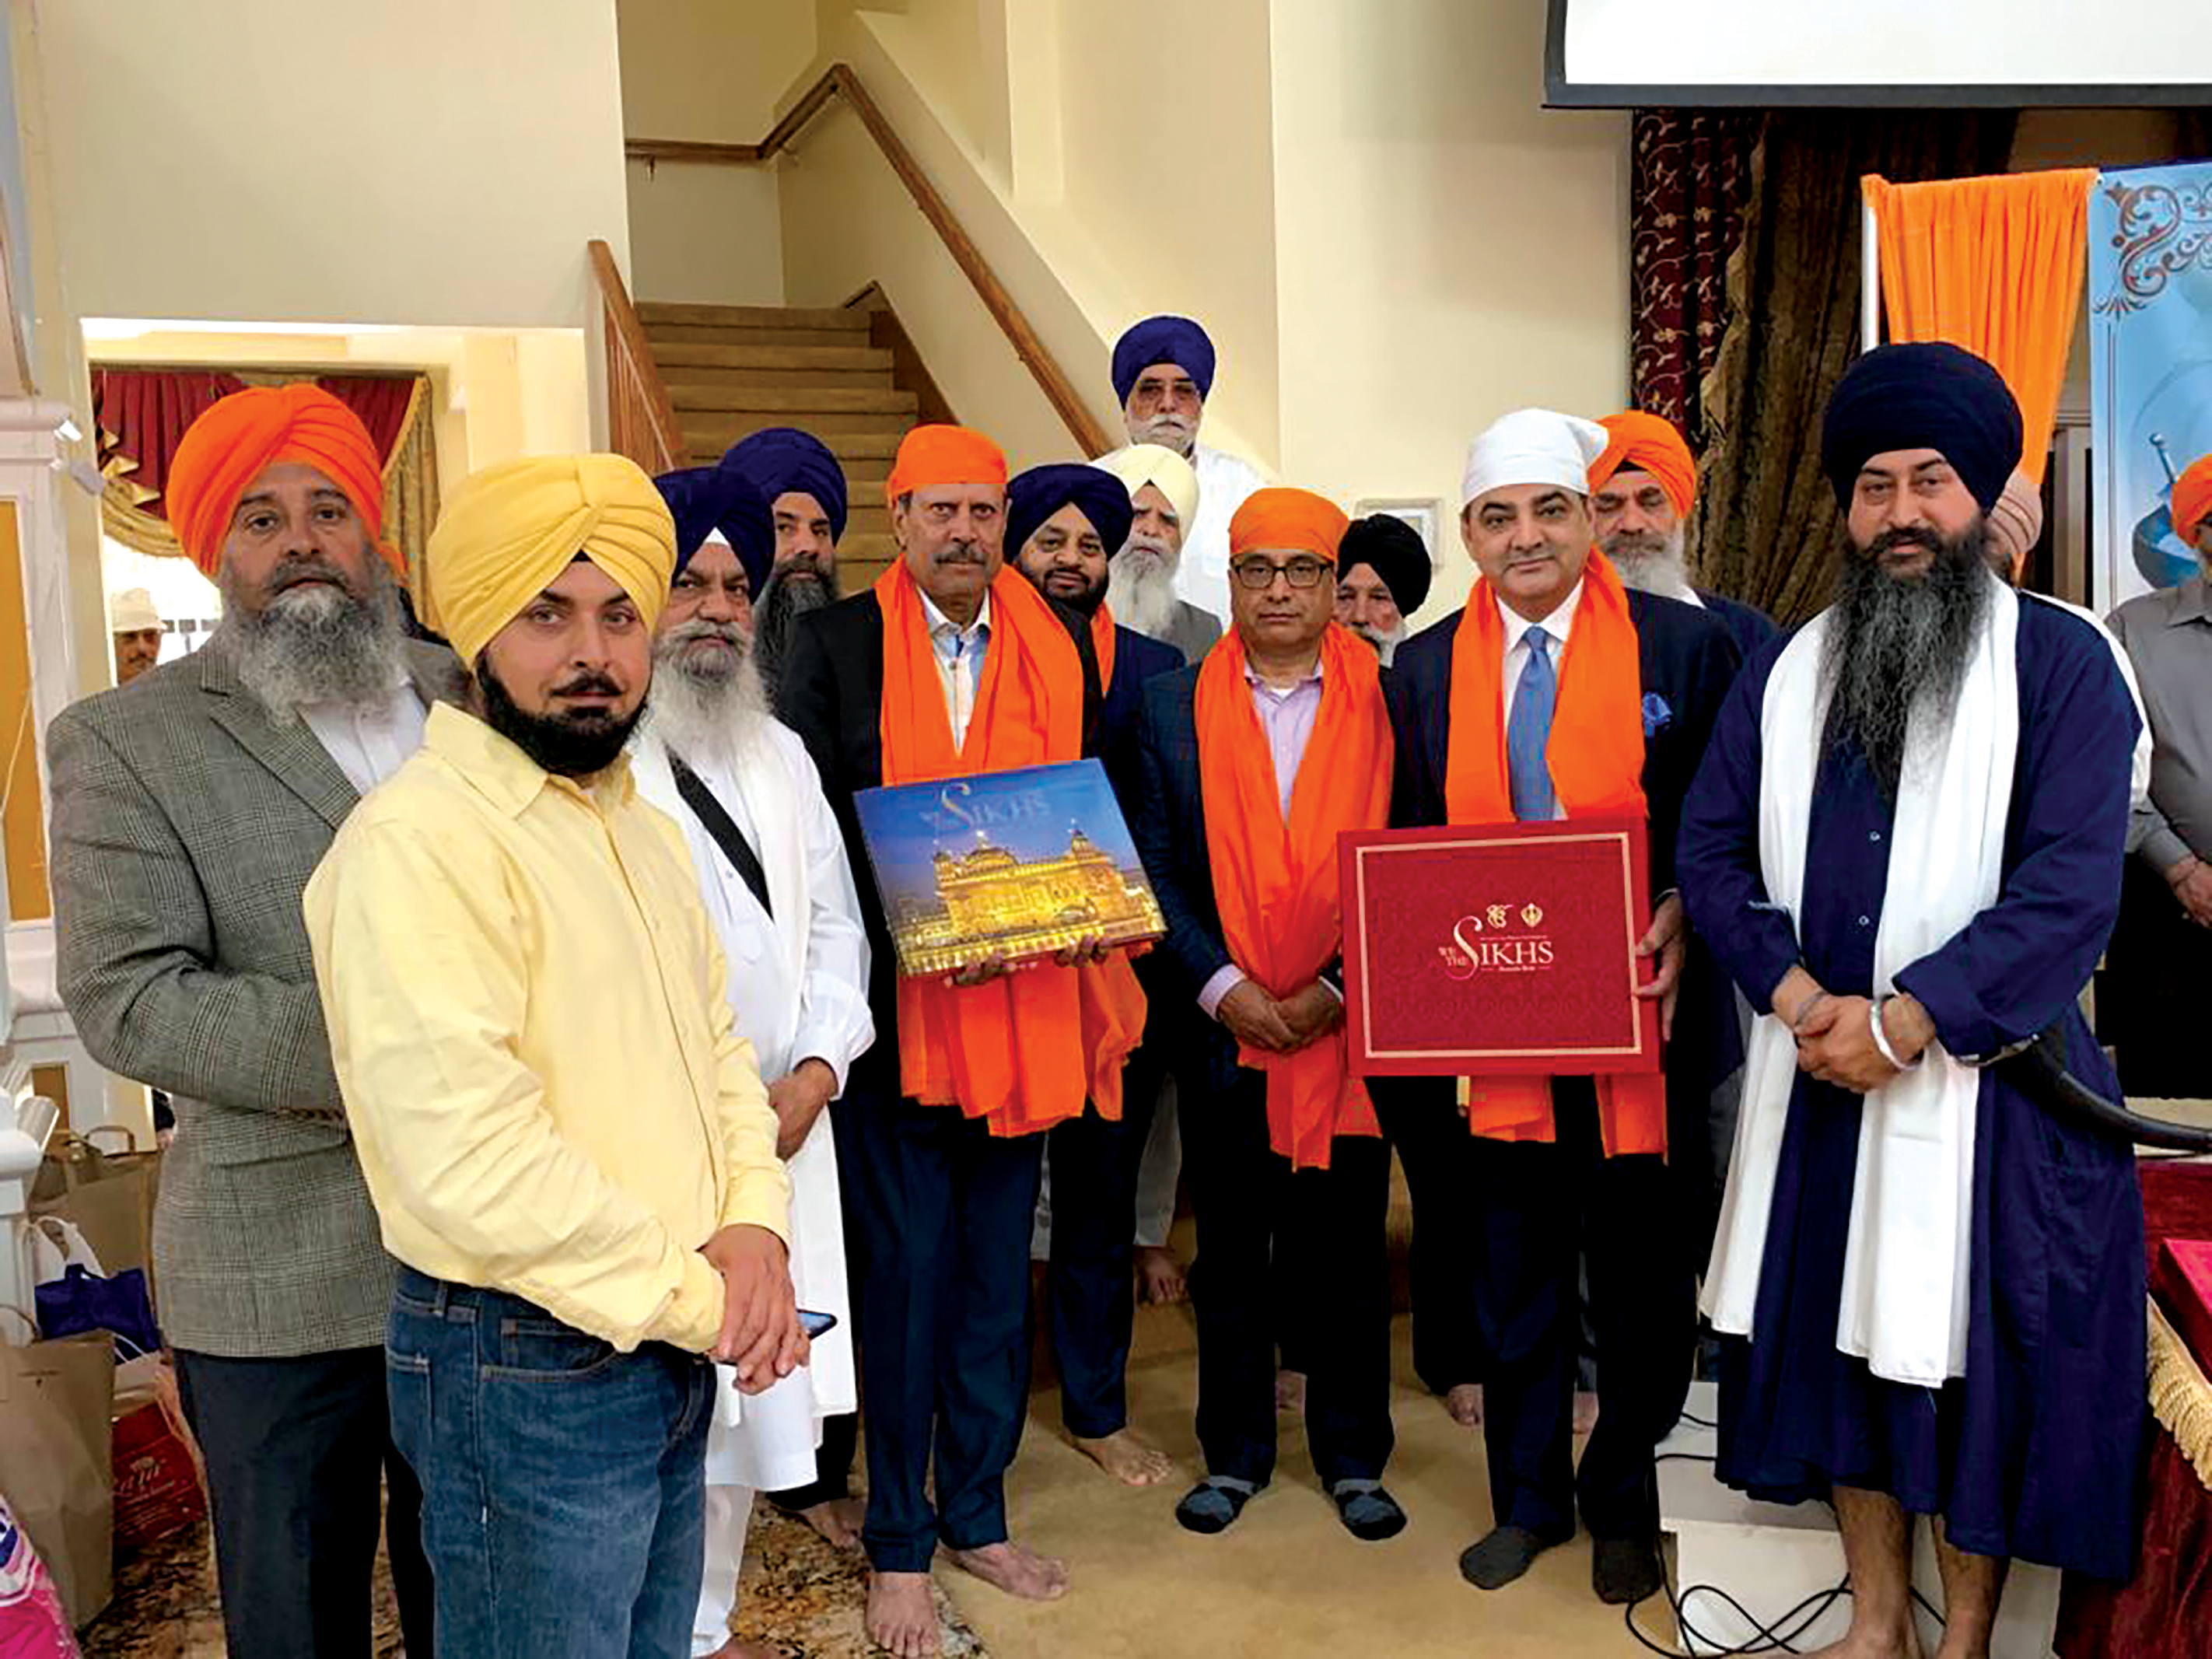 Celebration of Sikhism